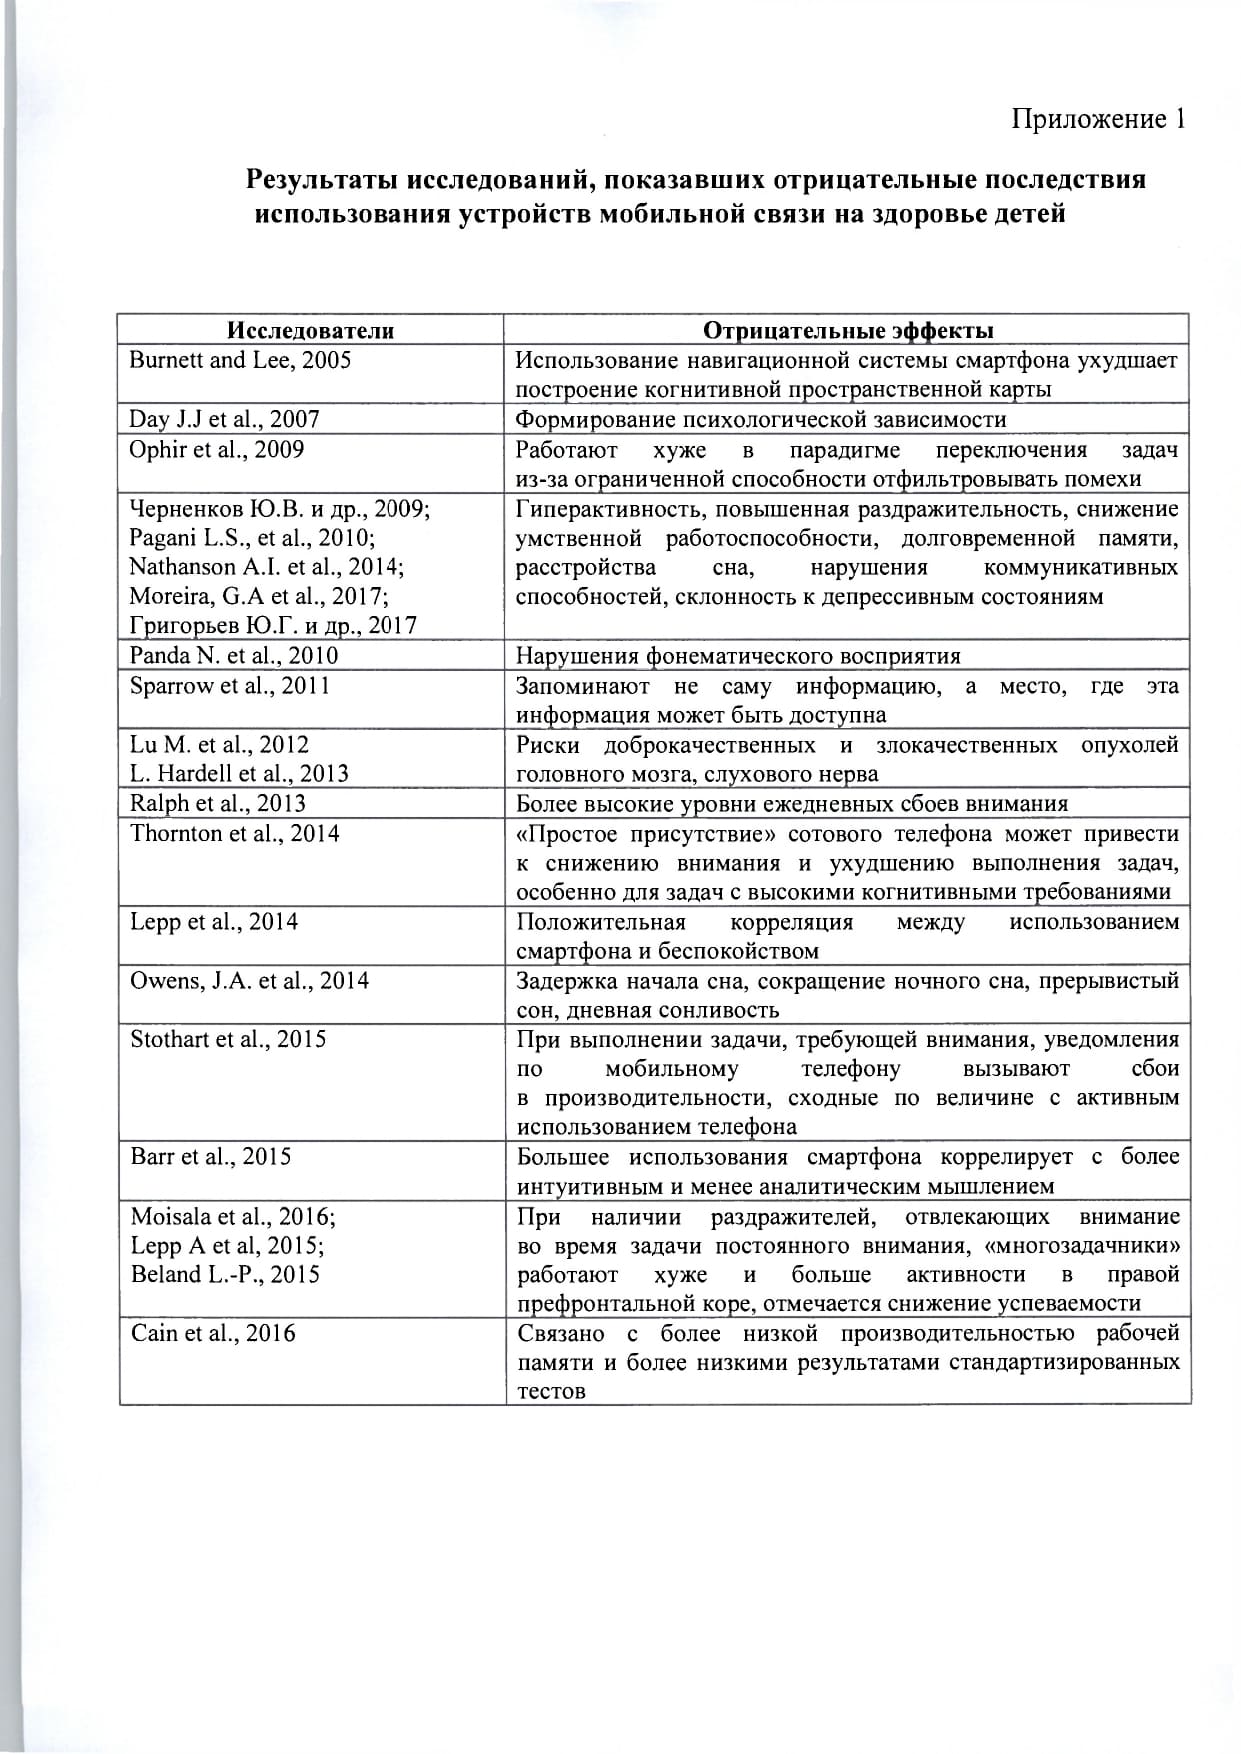 mr-telefony-v-obrazovatelnykh-org- 1  page-0007